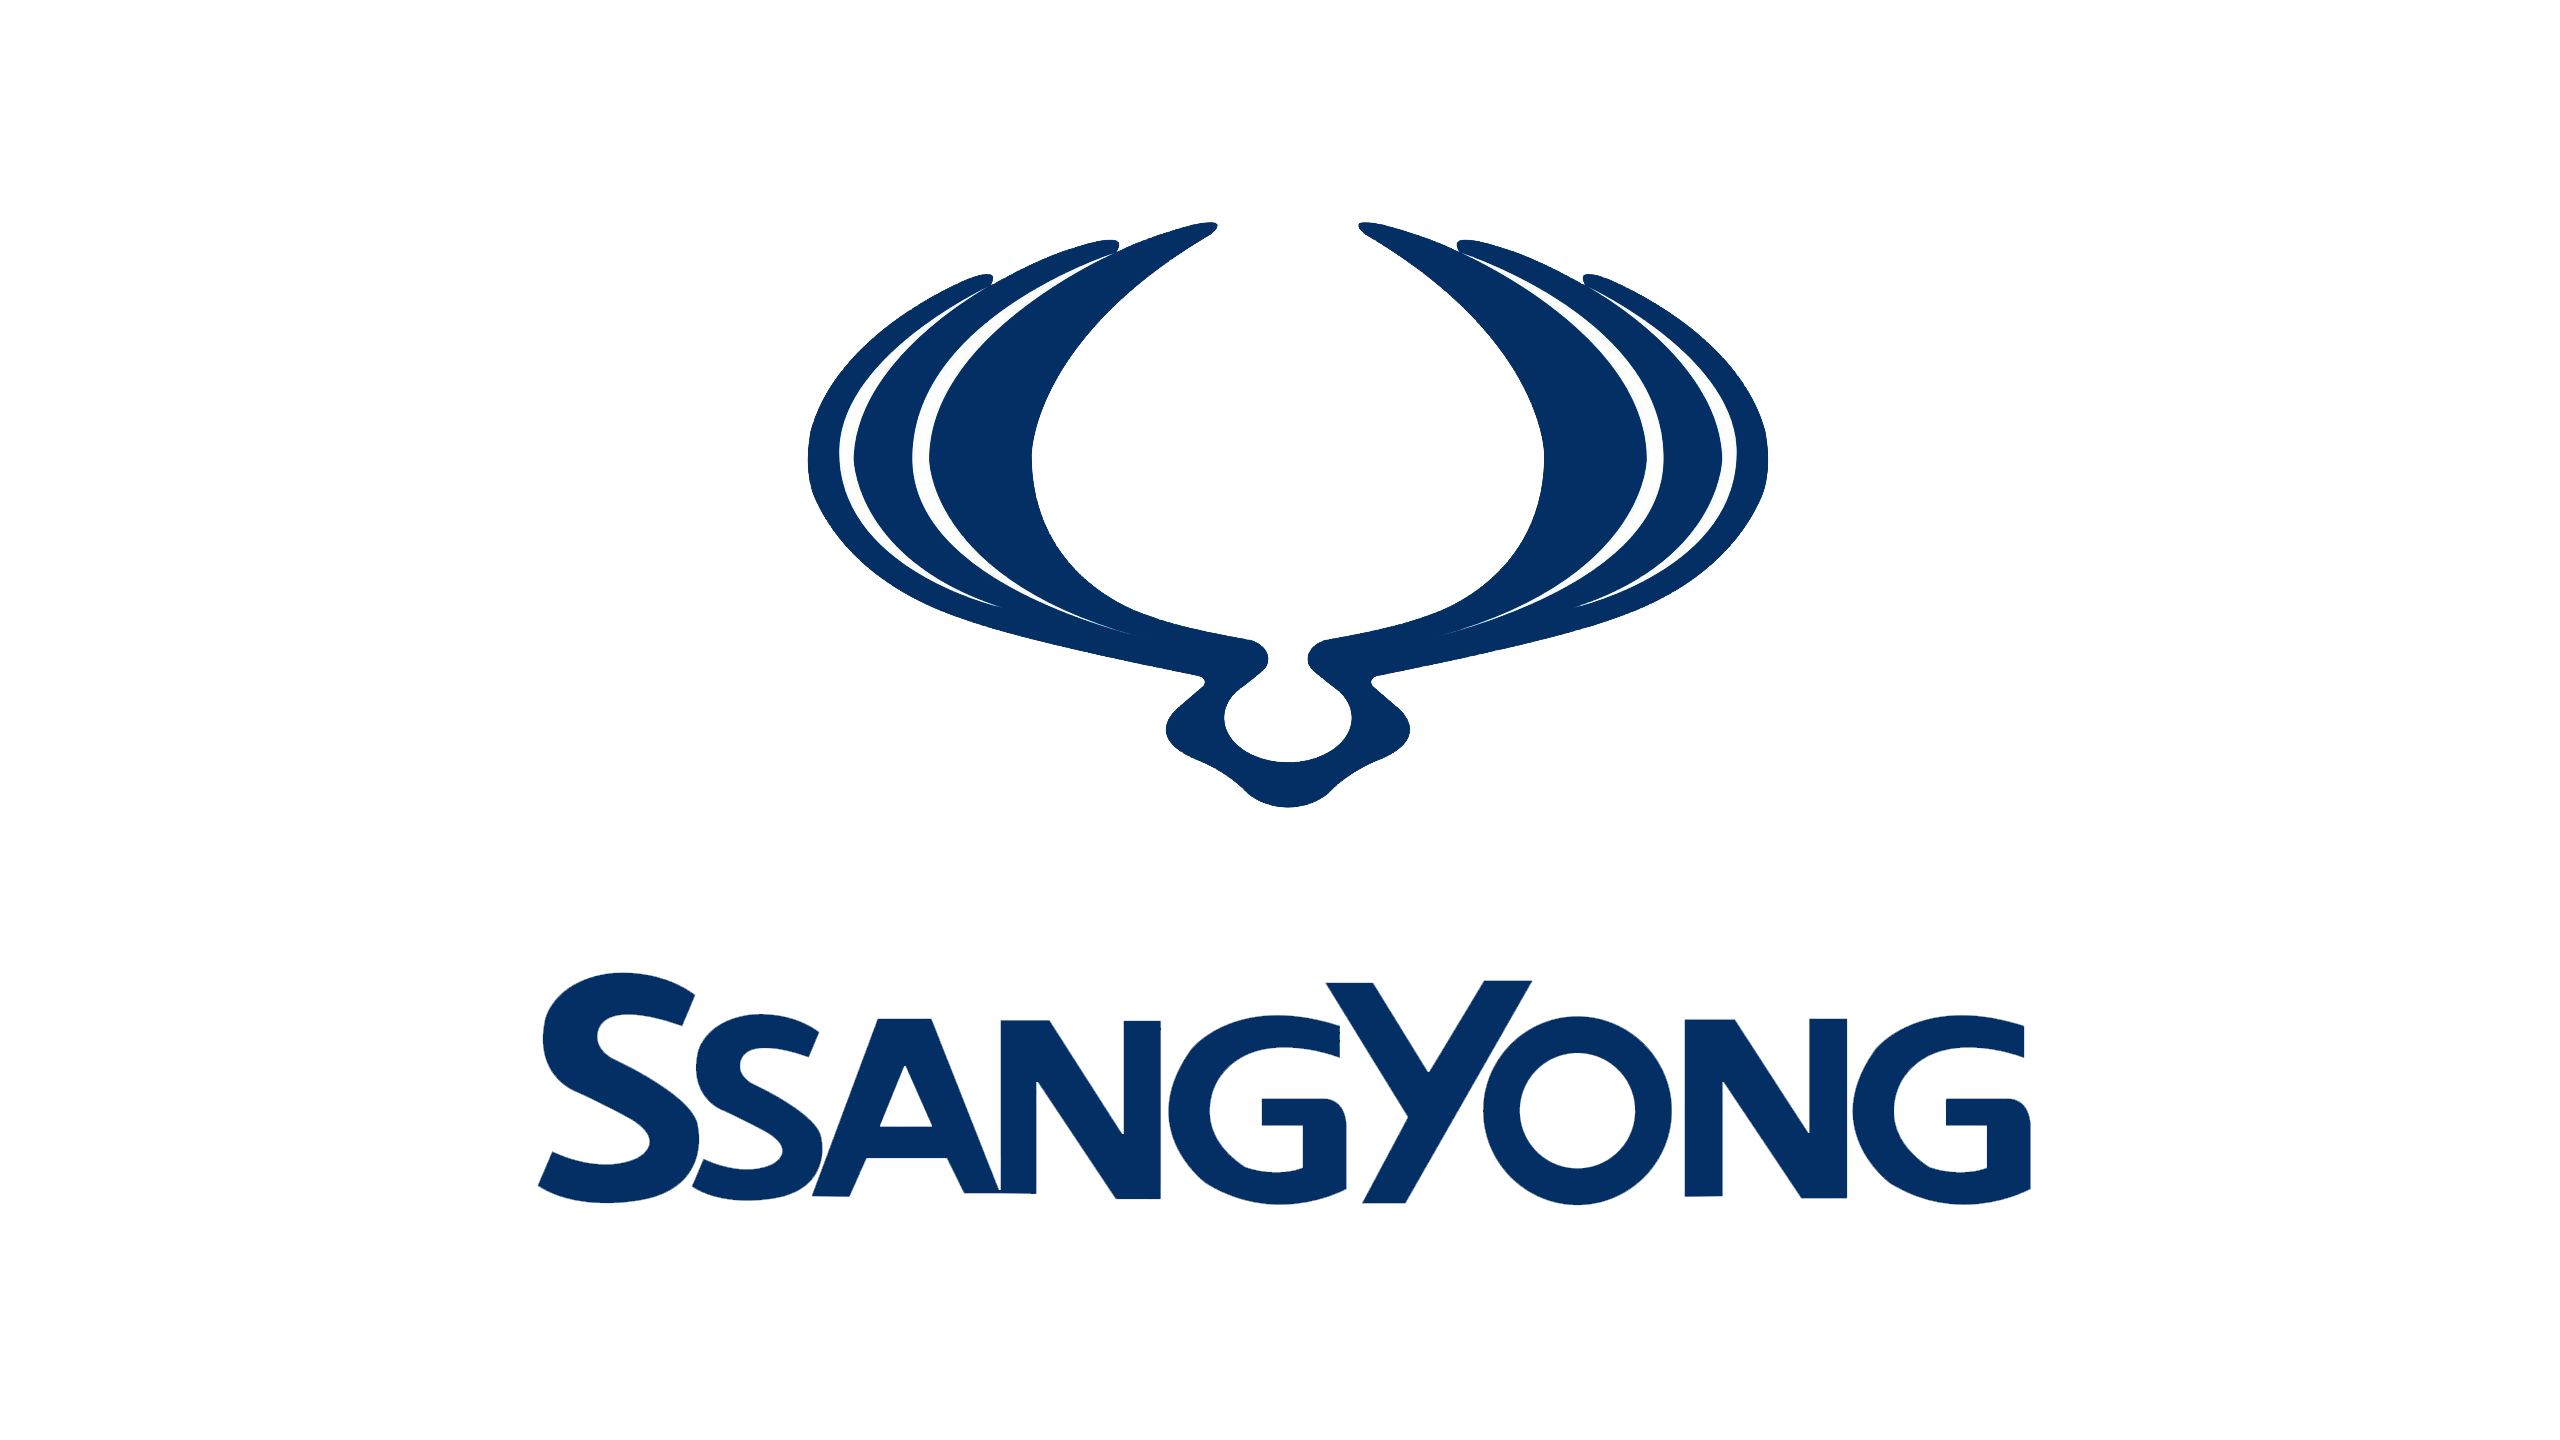 SsangYong logo 2560x1440